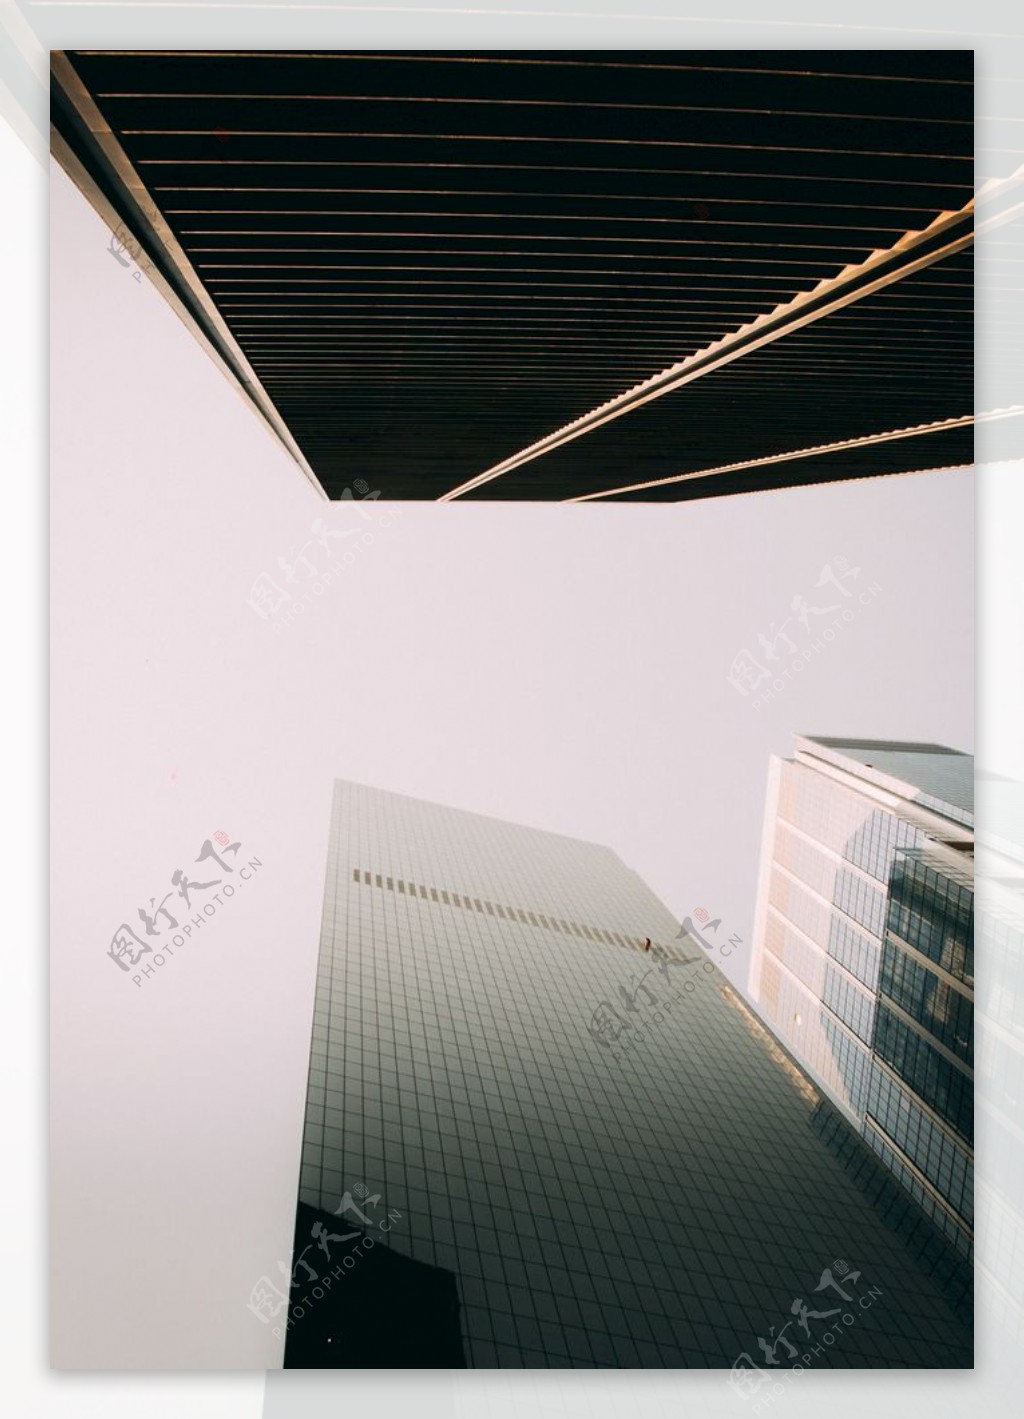 高层建筑的低角度摄影